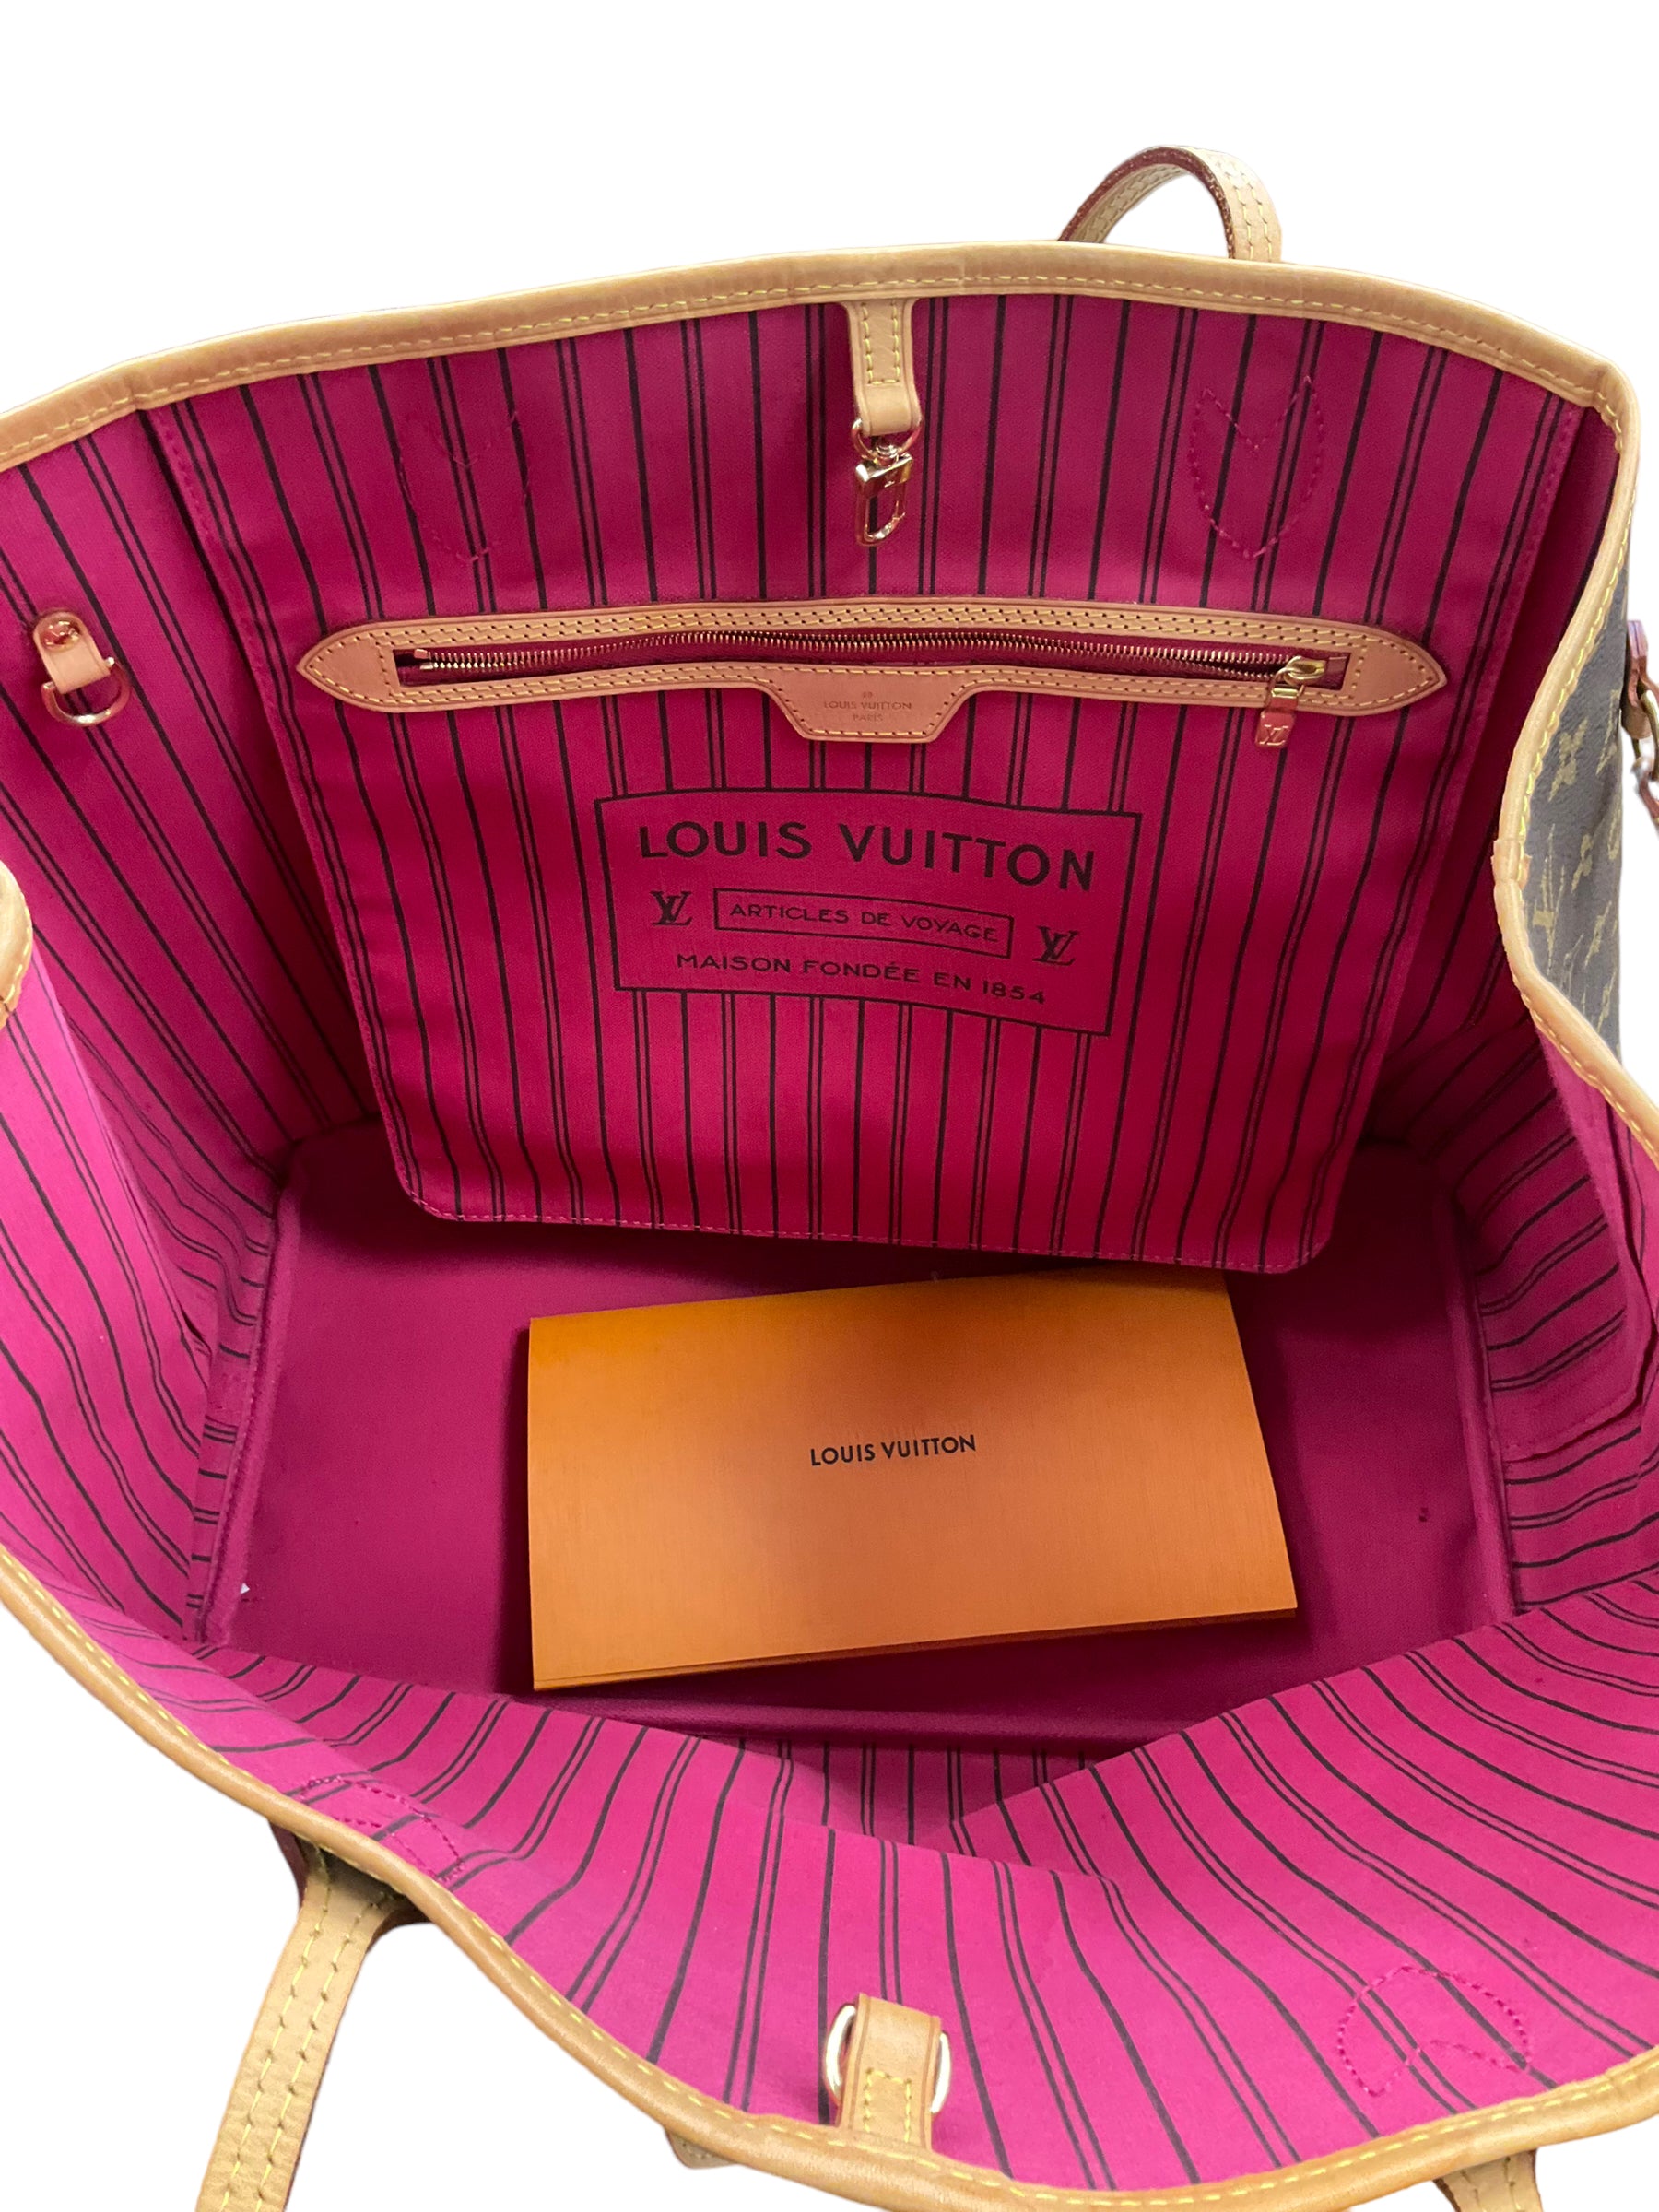 Louis Vuitton Clothes Mentor Oh